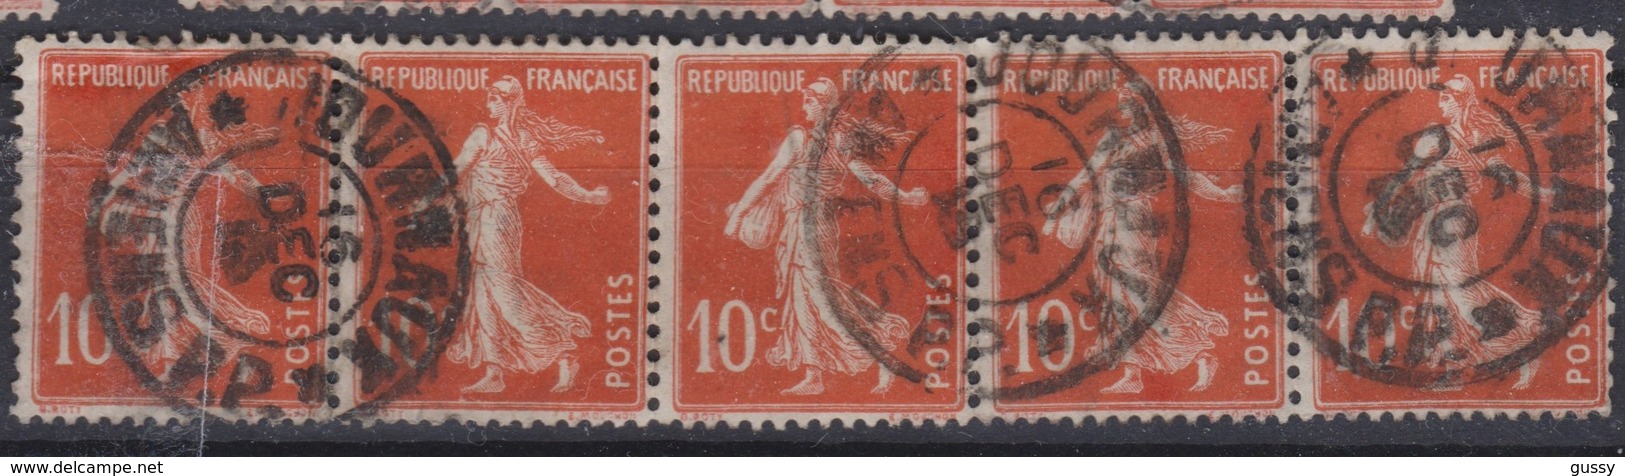 FRANCE Journaux 1906:  Le 10c Rouge Bande De 5  (Y&T 138) Avec Oblitération  Pas Très Courante   'Journaux-Amiens'   TB - Newspapers